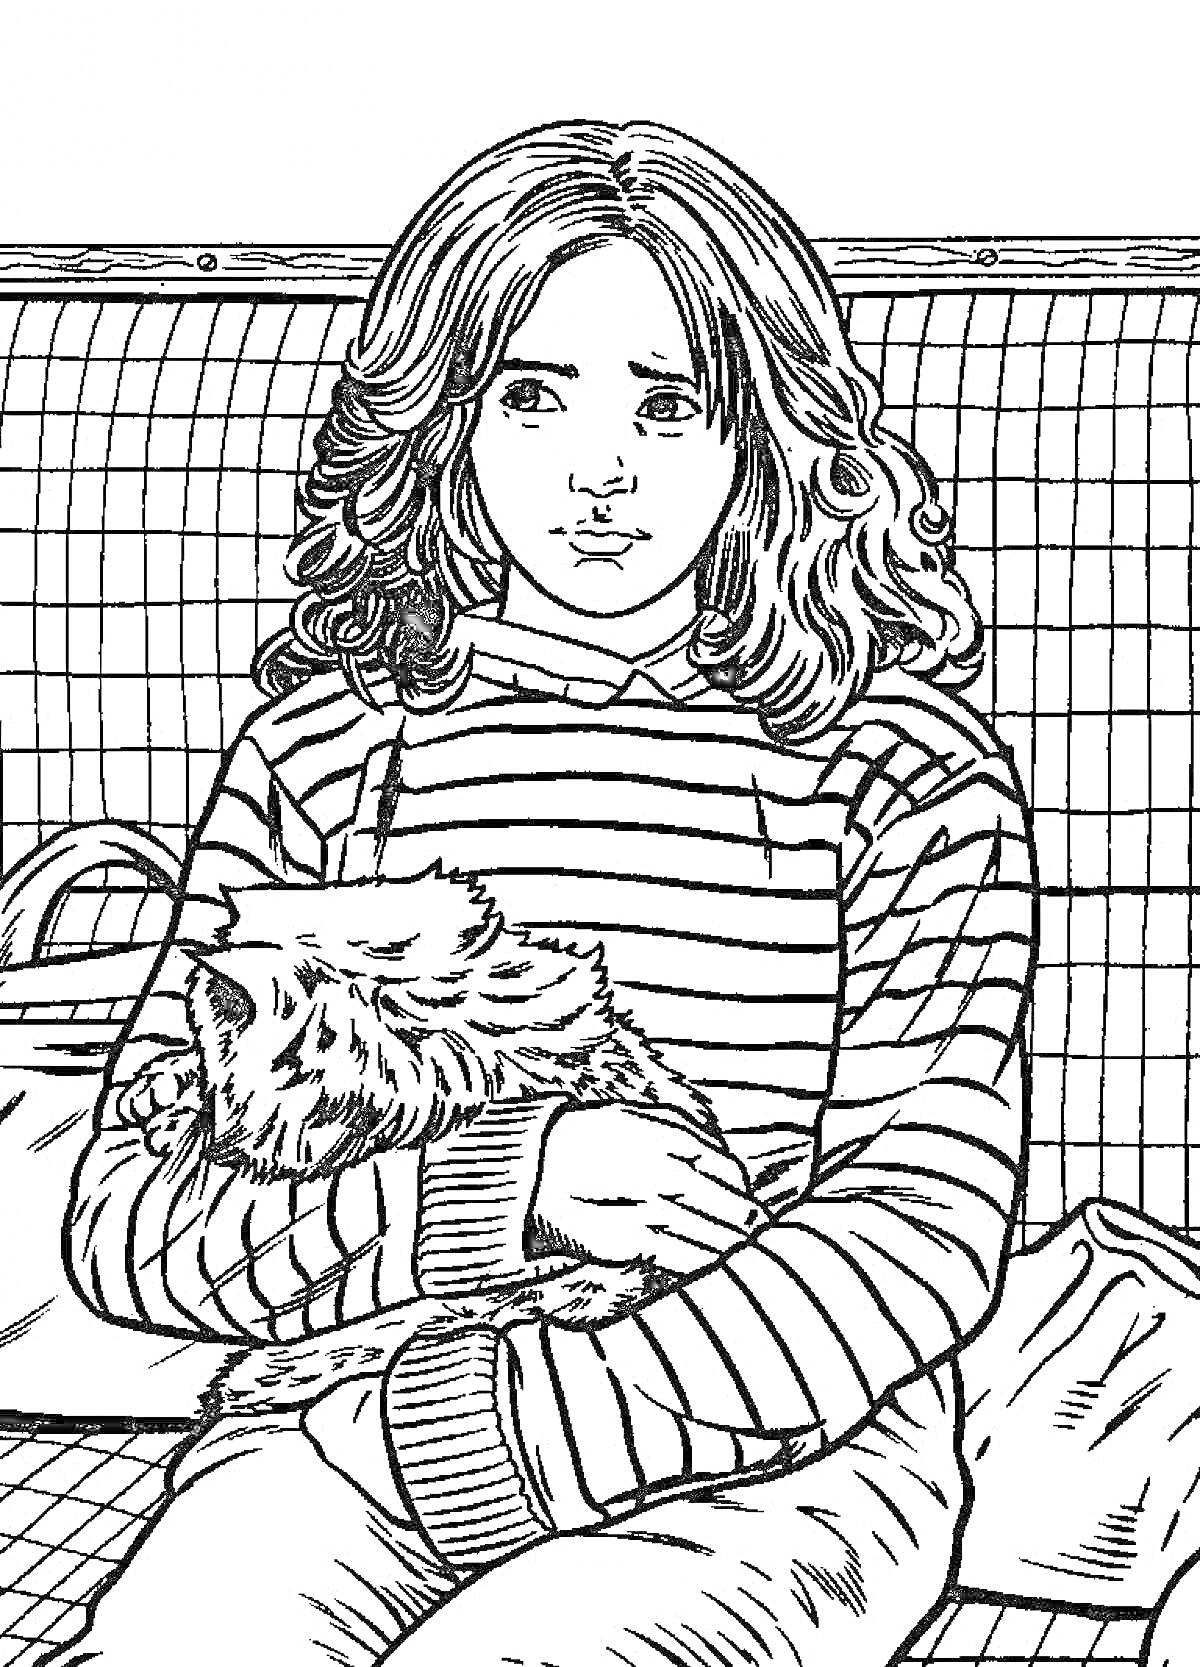  Девочка в полосатом свитере с кошкой в руках на скамейке